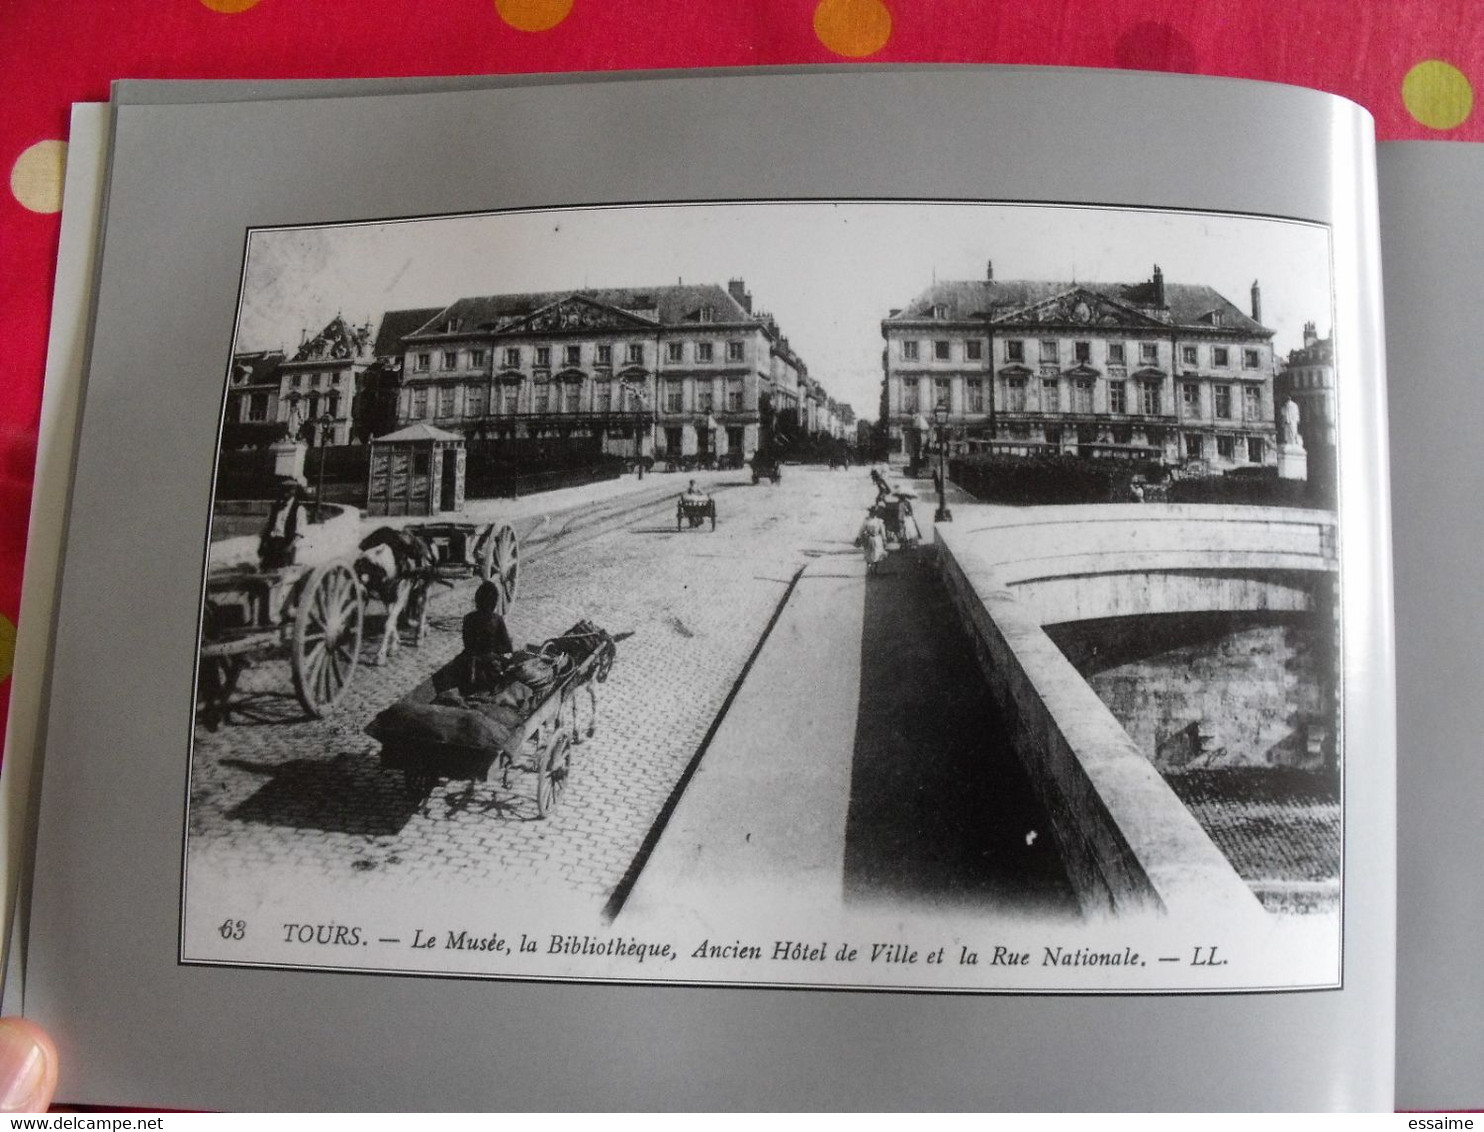 miroir de Tours 1900-200. carte postale photo.Bernard & Lemoine-Chevallereau. Indre et Loire ville